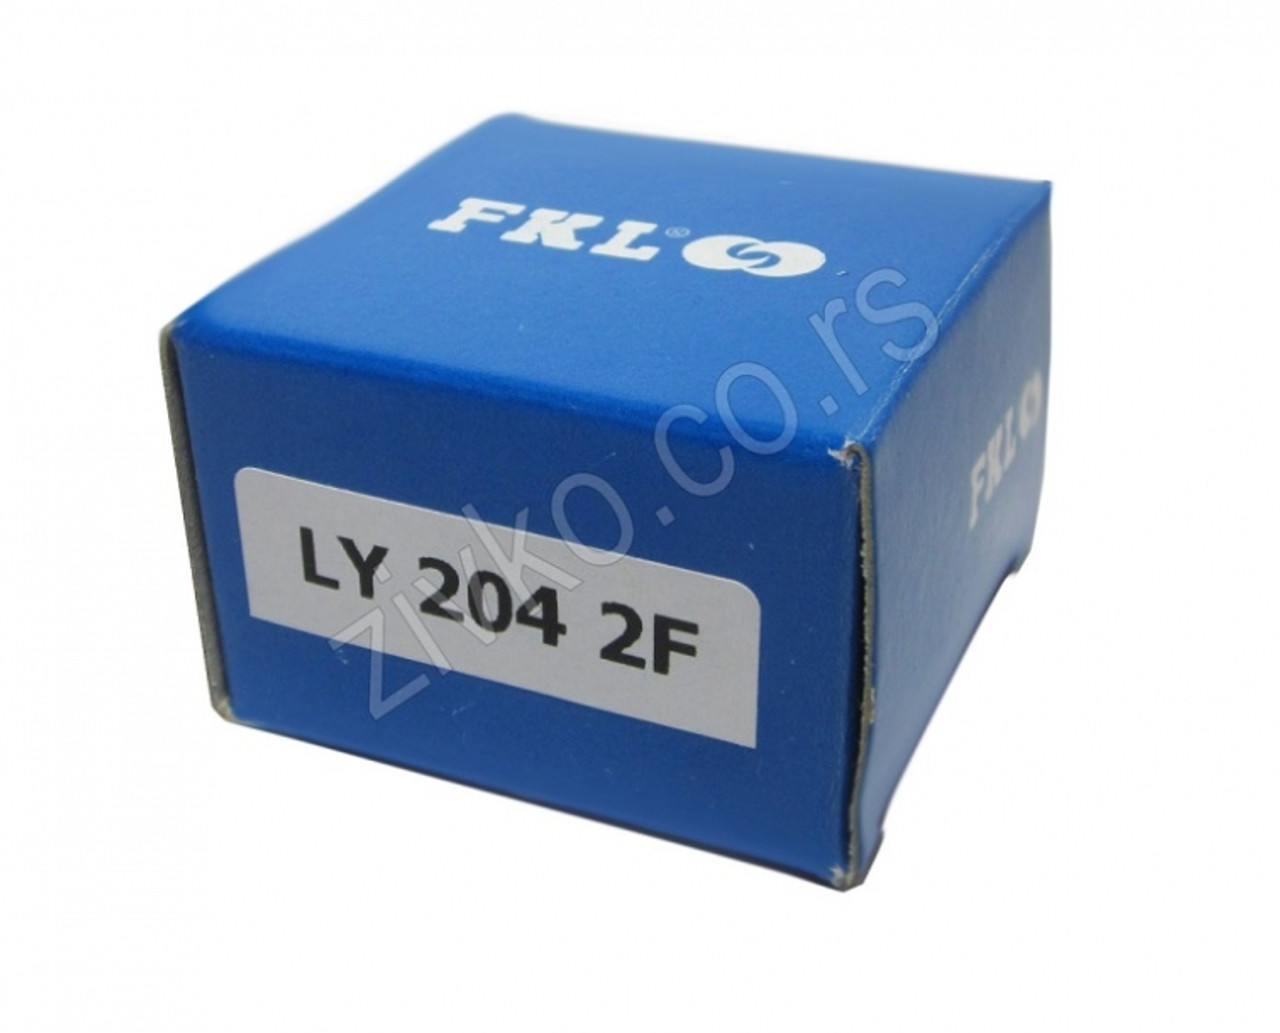 Kuglični samopodesivi ležaj LY 204 2F FKL - 1